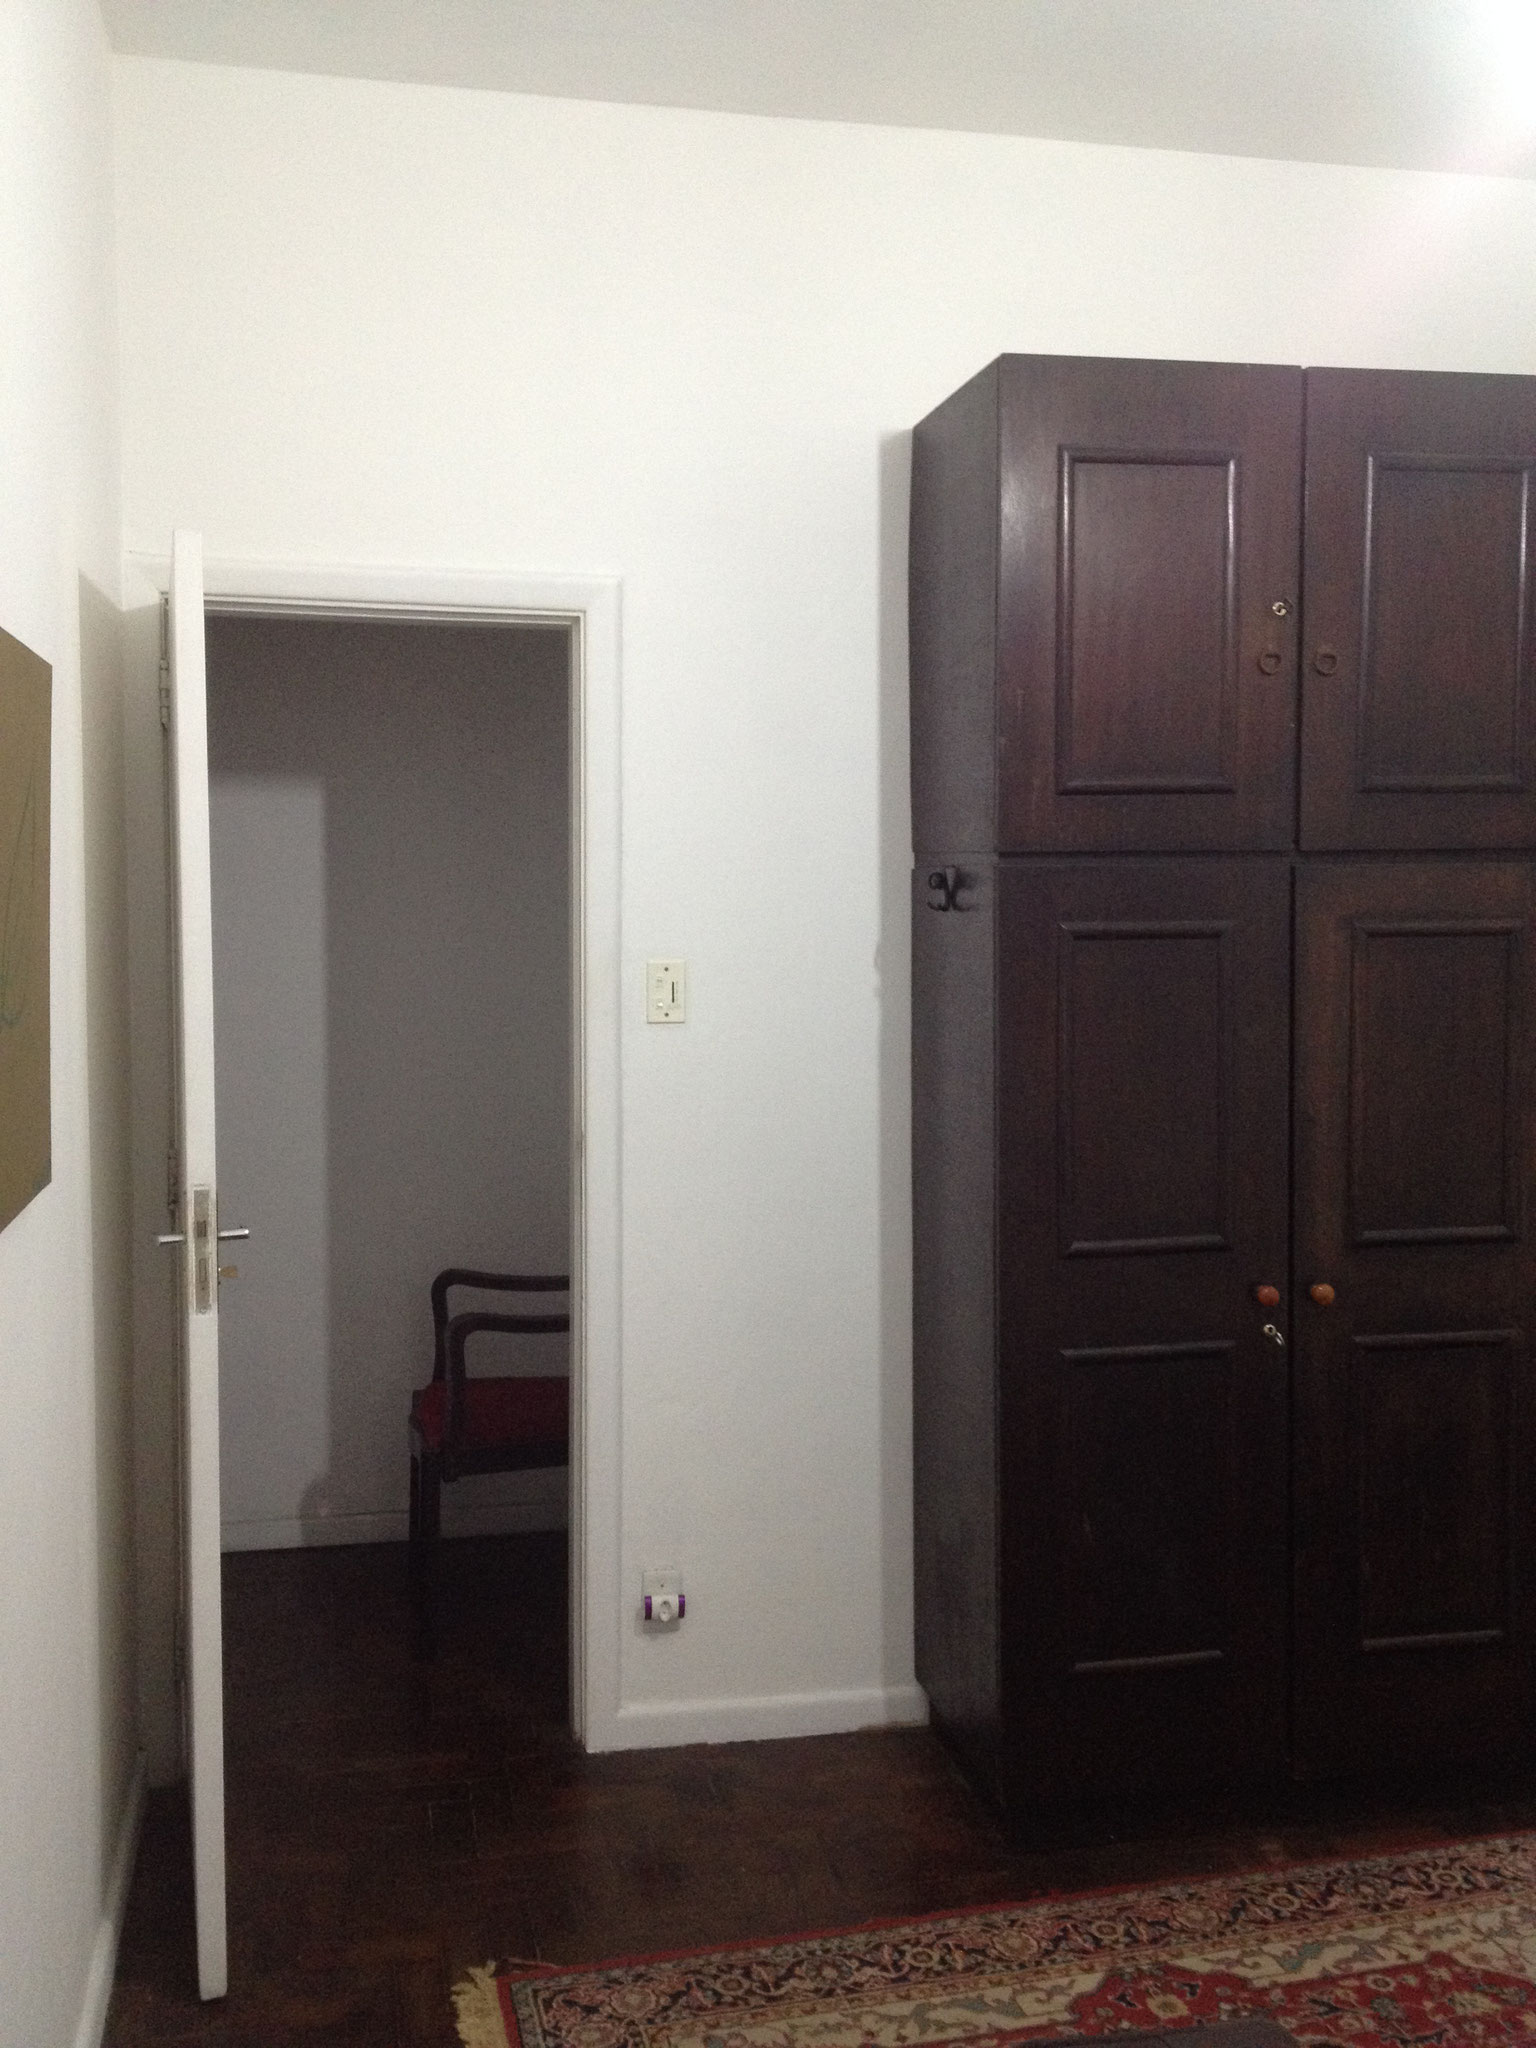 door and closet in the second sleeping room